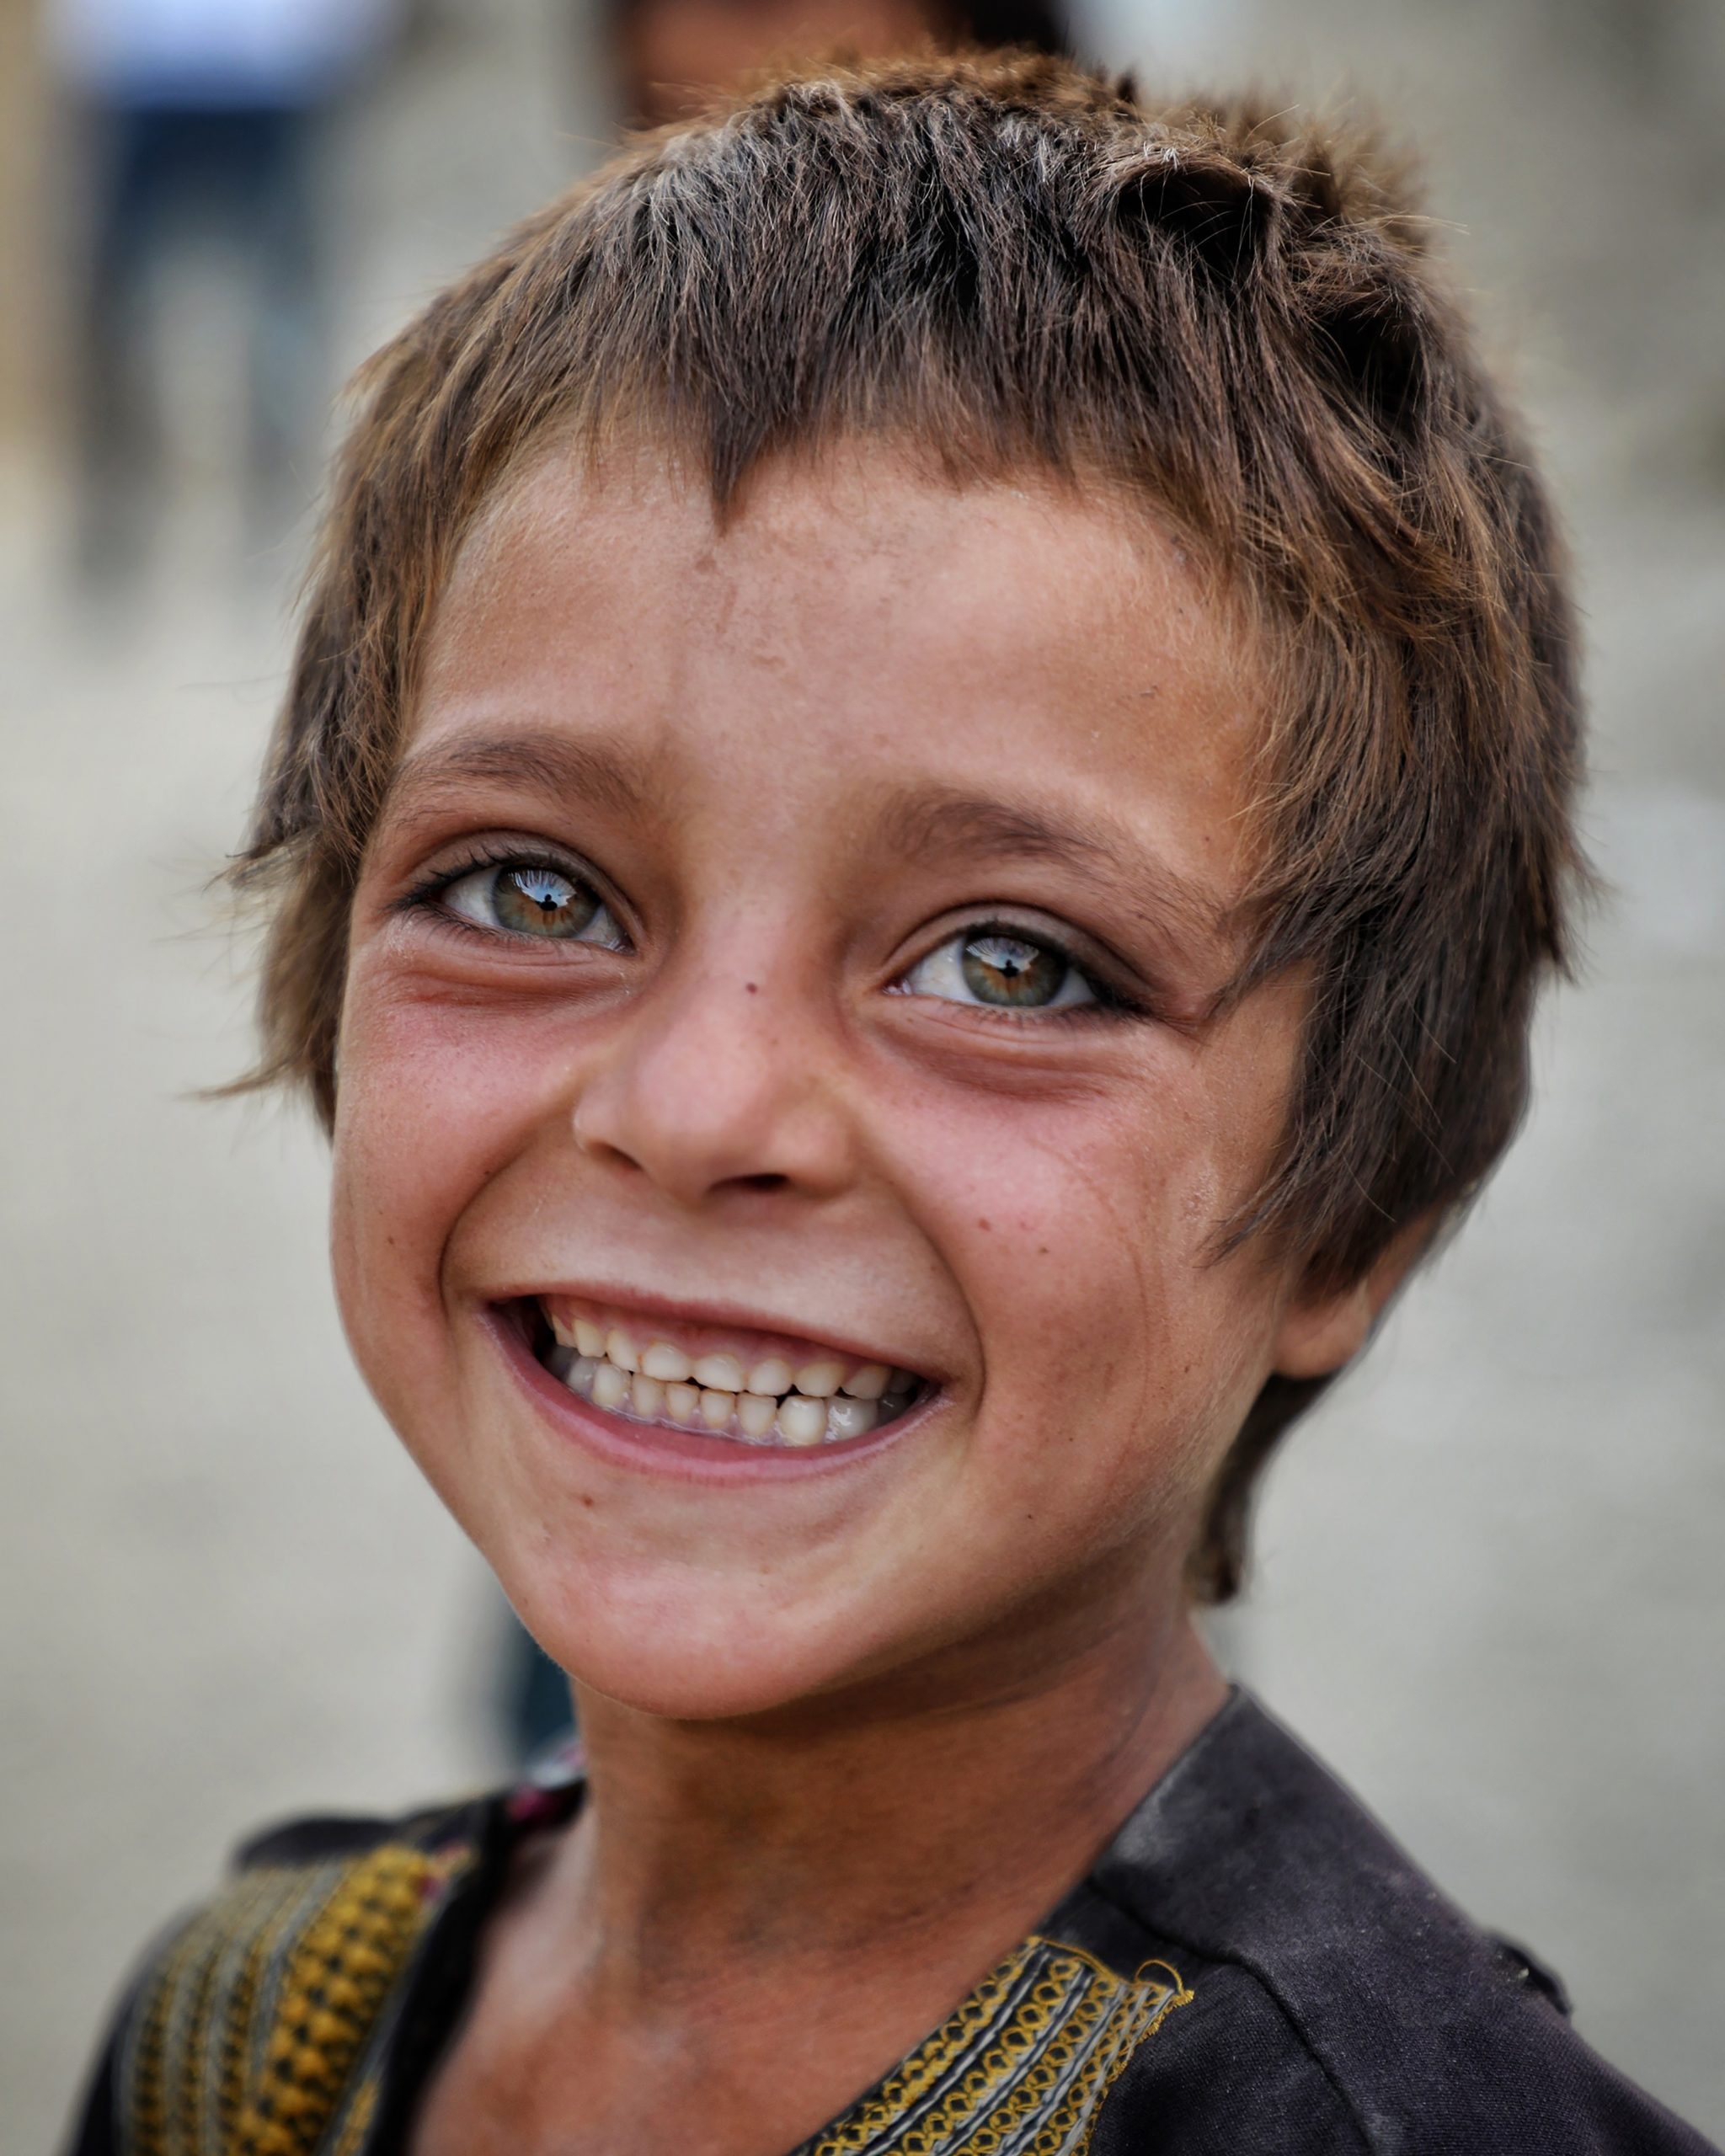 Ritratto di un bambino sfollato da Helmand a Kabul, Kabul, 2020.©Roya Heydari